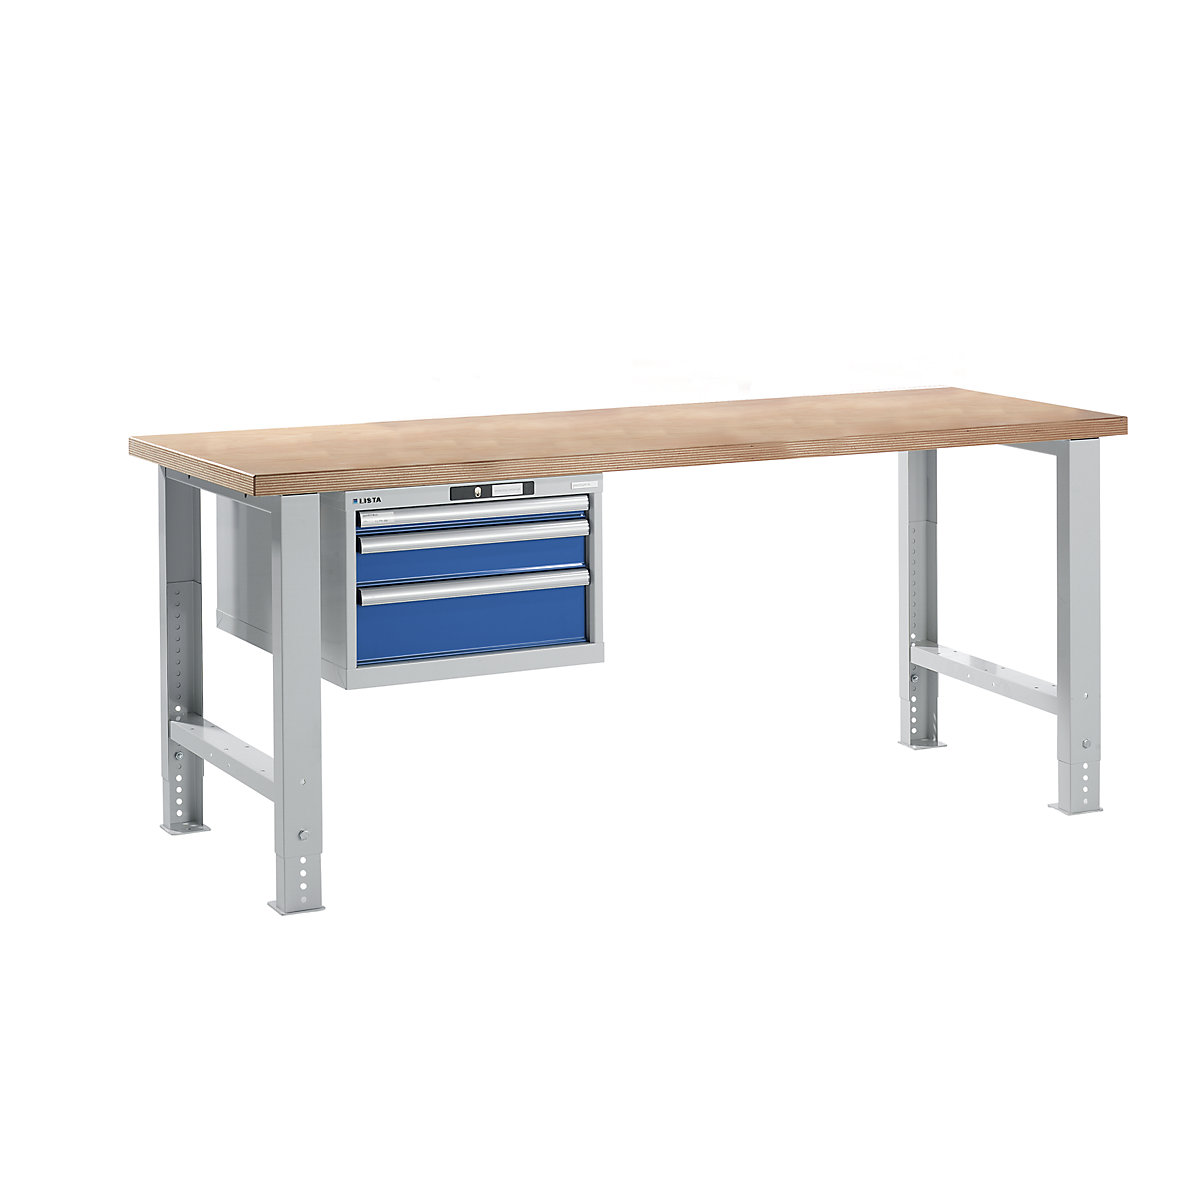 Dílenský stůl ve stavebnicovém systému – LISTA, výška 740 – 1090 mm, závěsná skříň, 3 zásuvky, hořcově modrá, šířka stolu 2000 mm-17